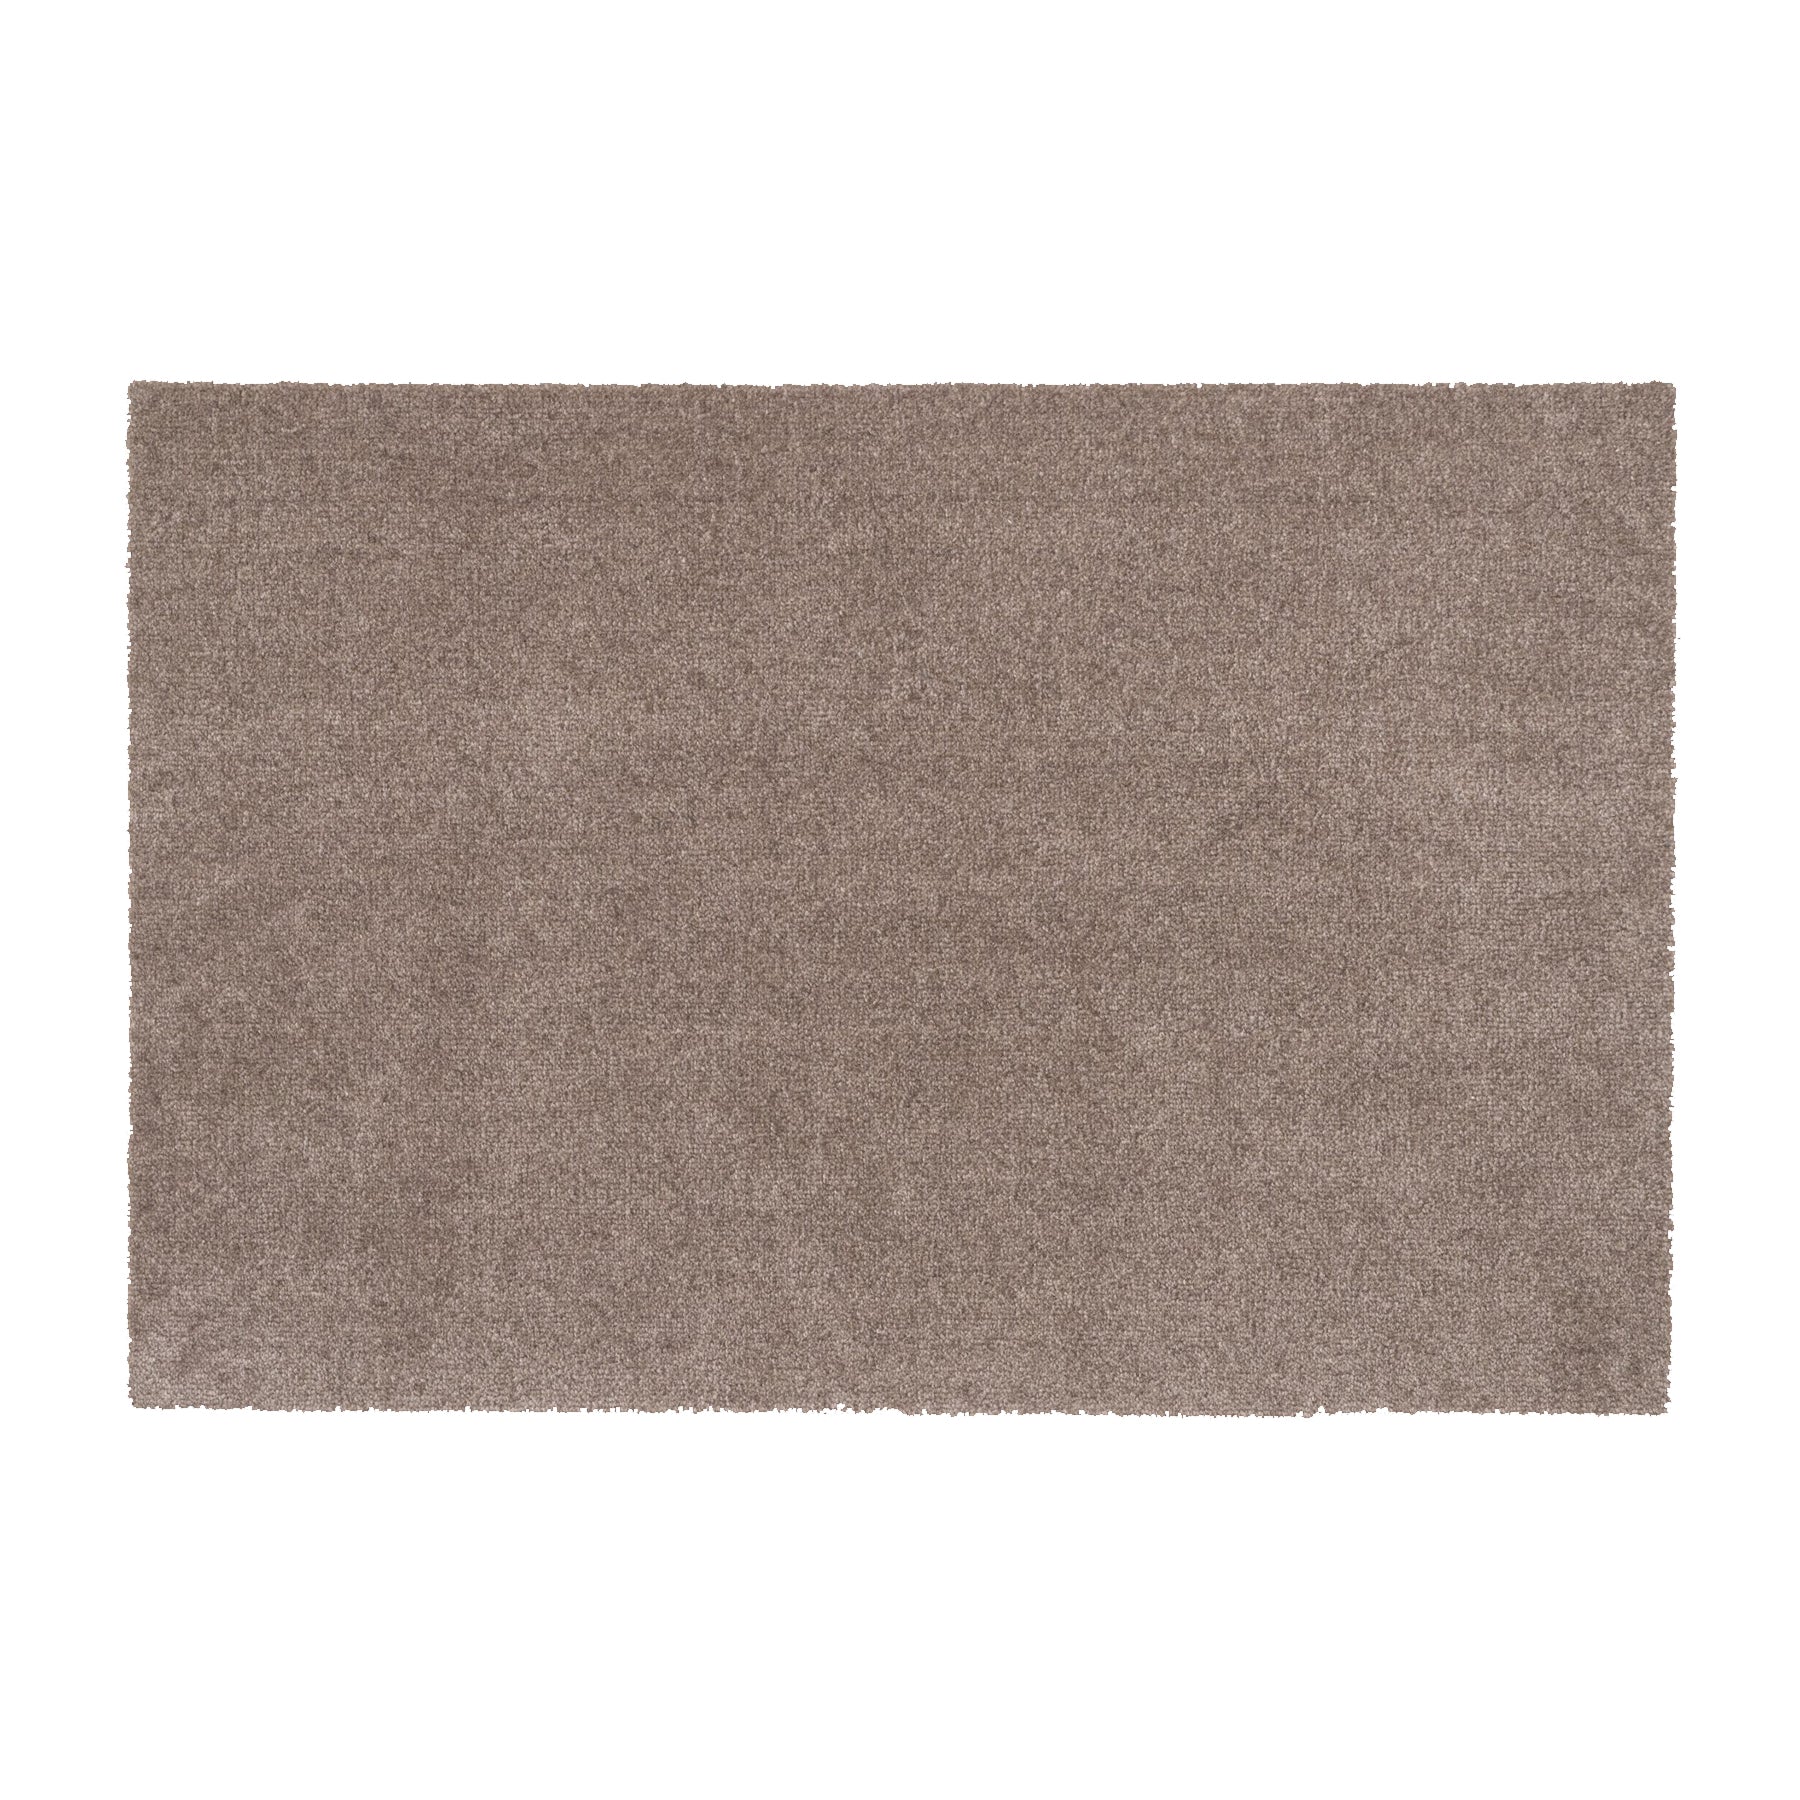 Floor mat 60 x 90 cm - uni color/sand